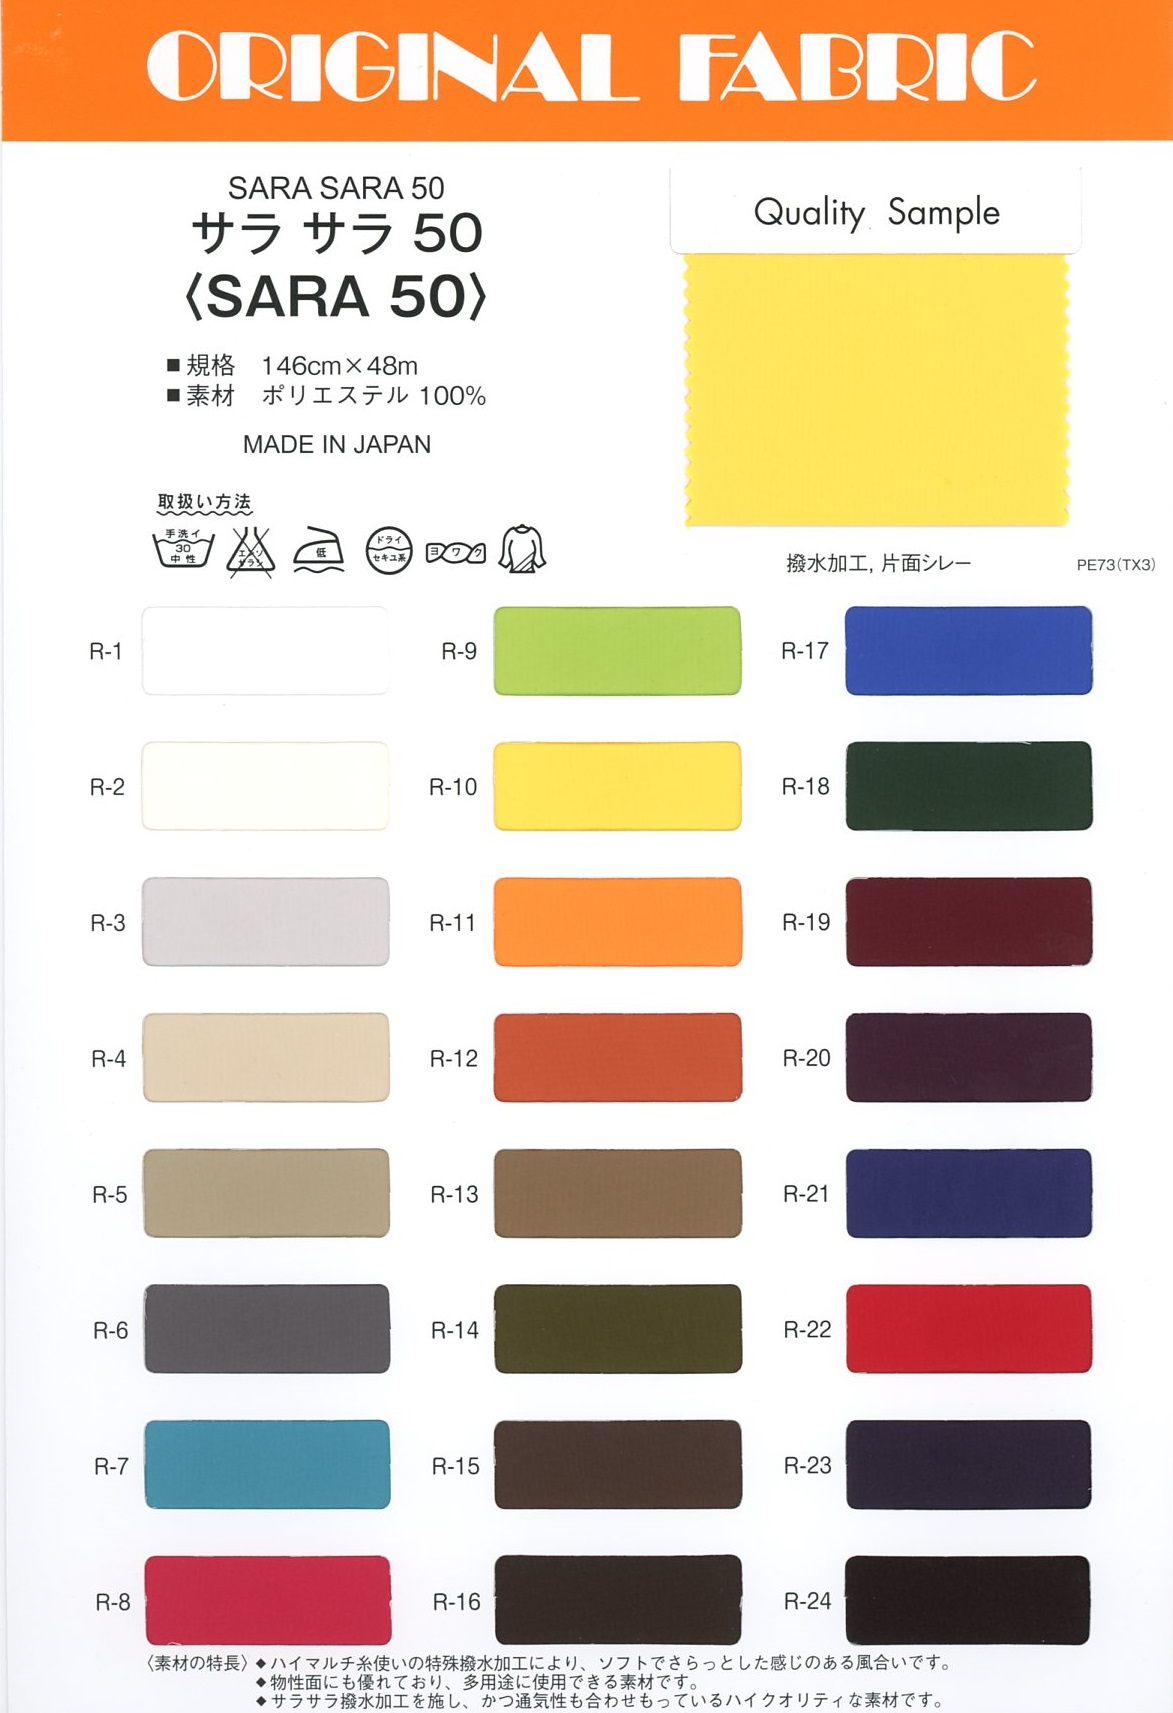 SARA50 Sara Sara 50[Fabrica Textil] Masuda